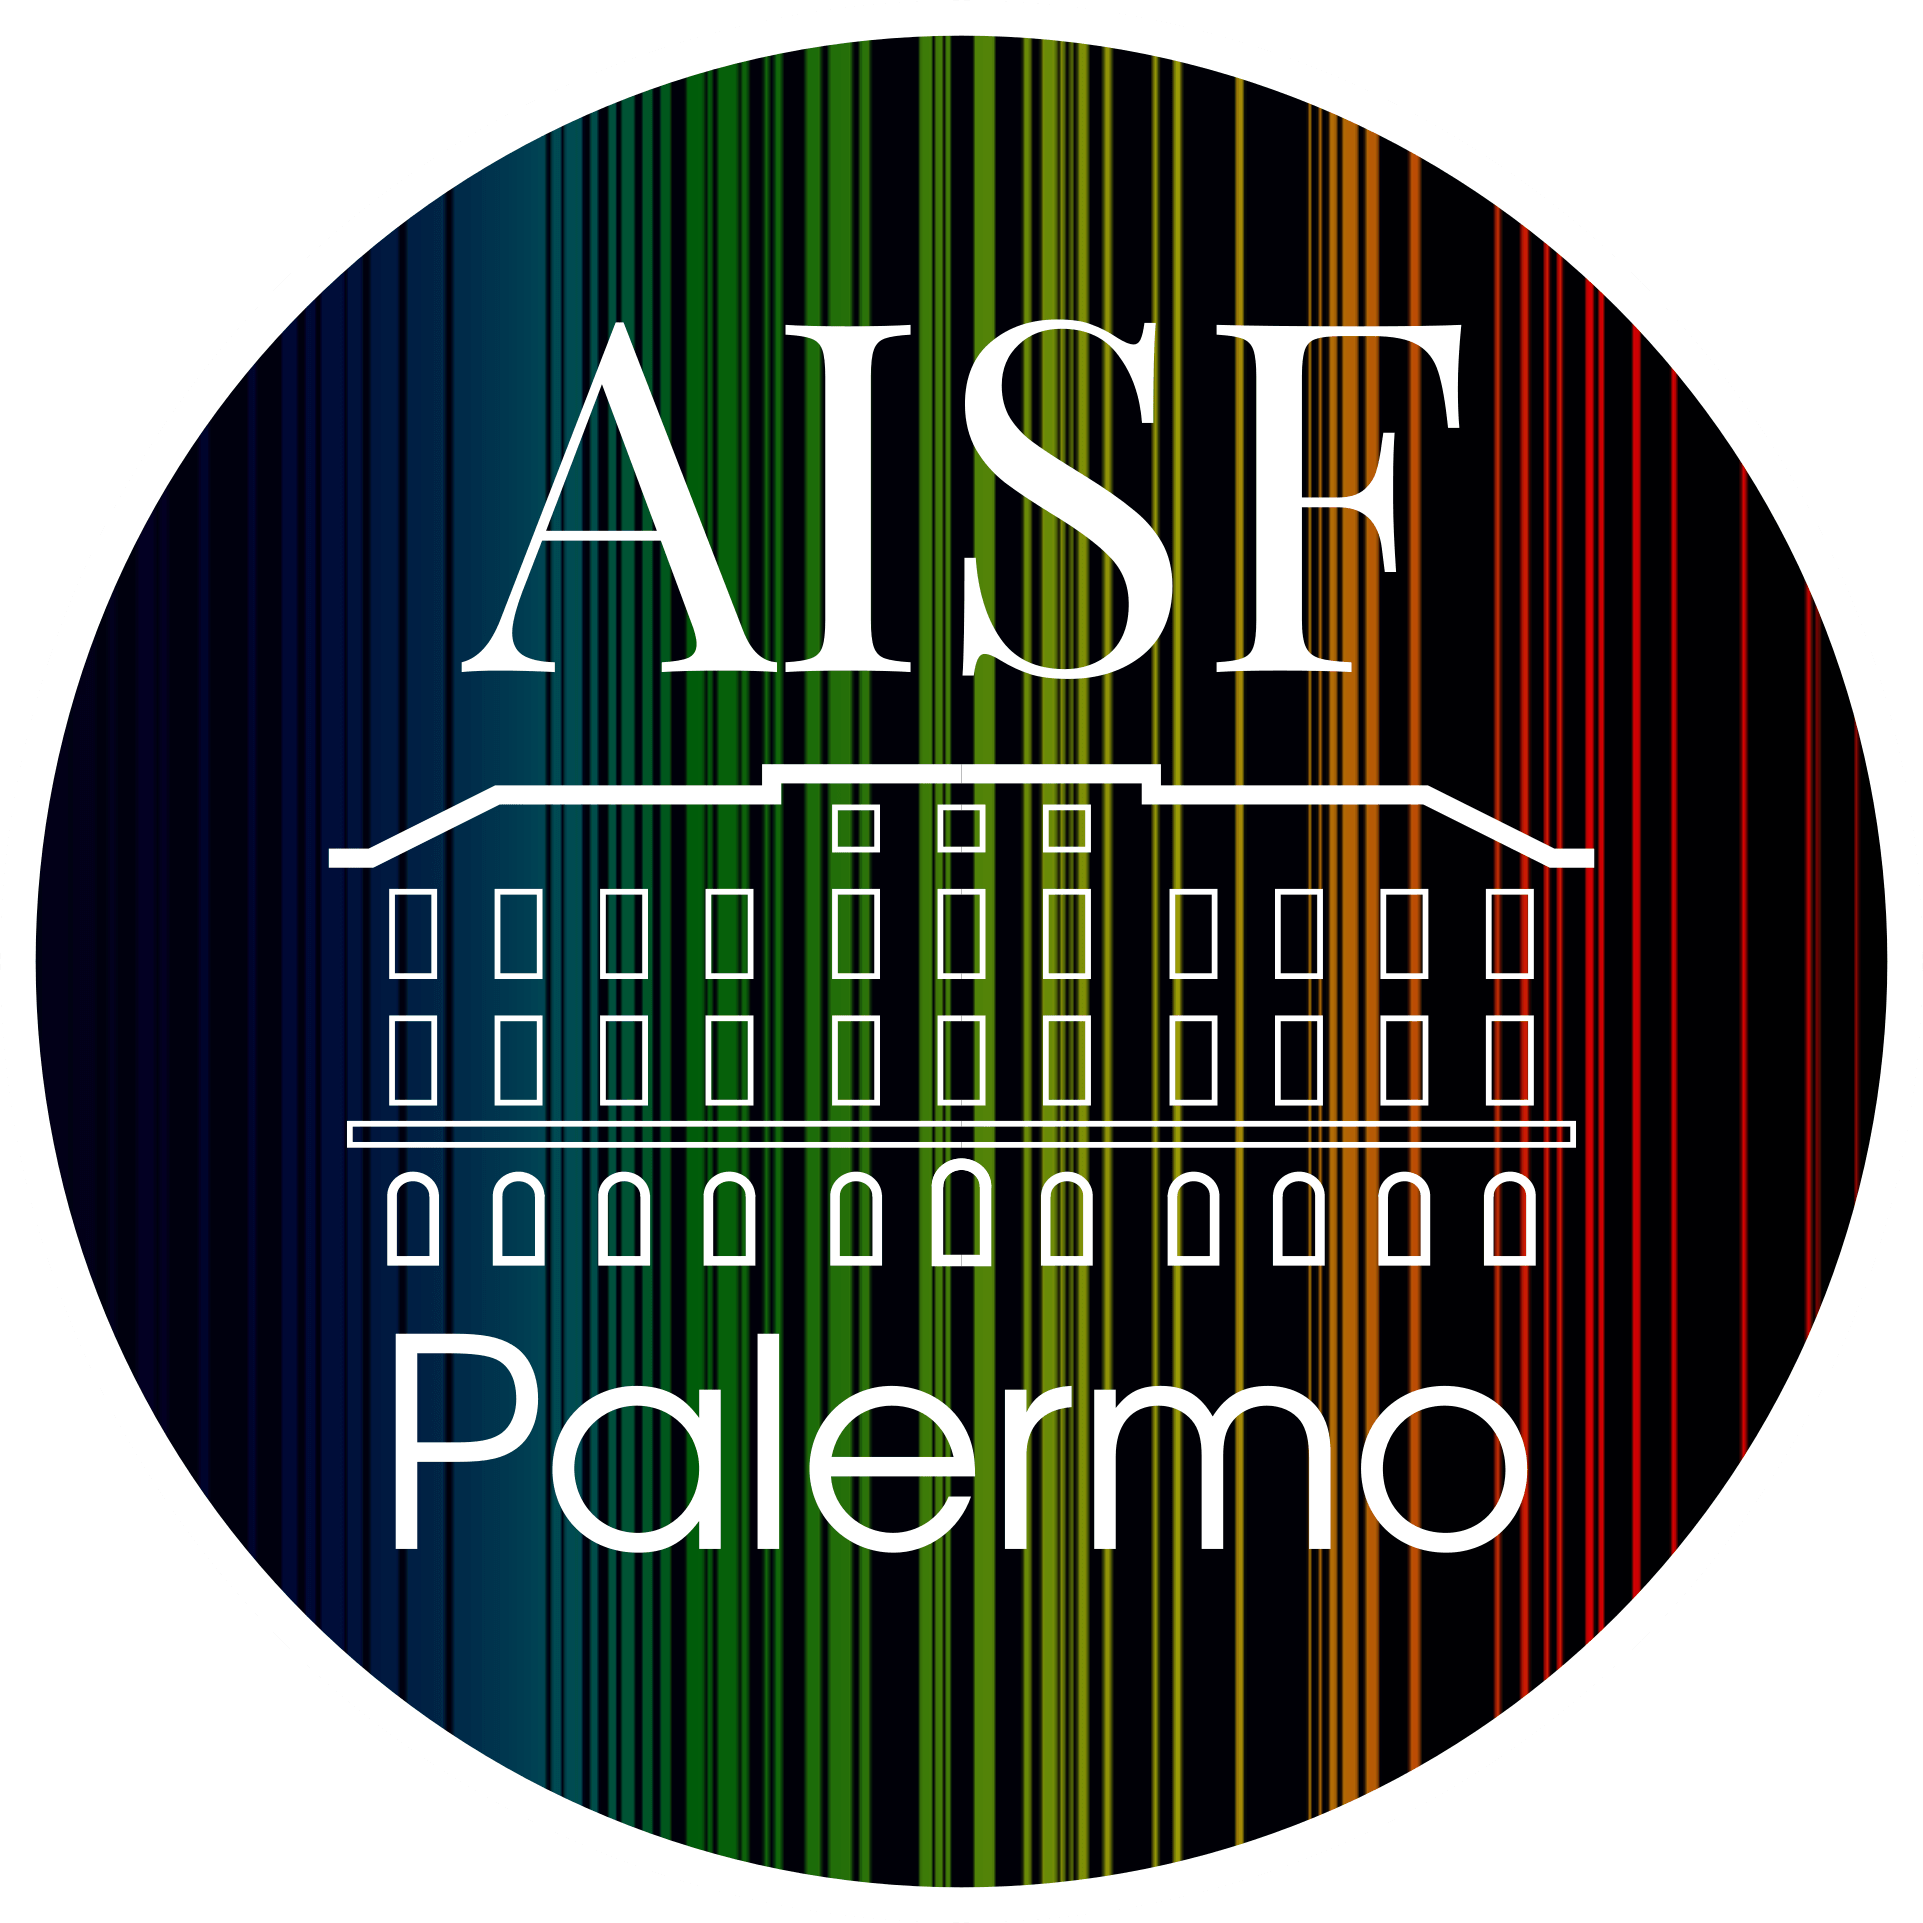 AISF Palermo, l'Associazione Italiana Studenti di Fisica